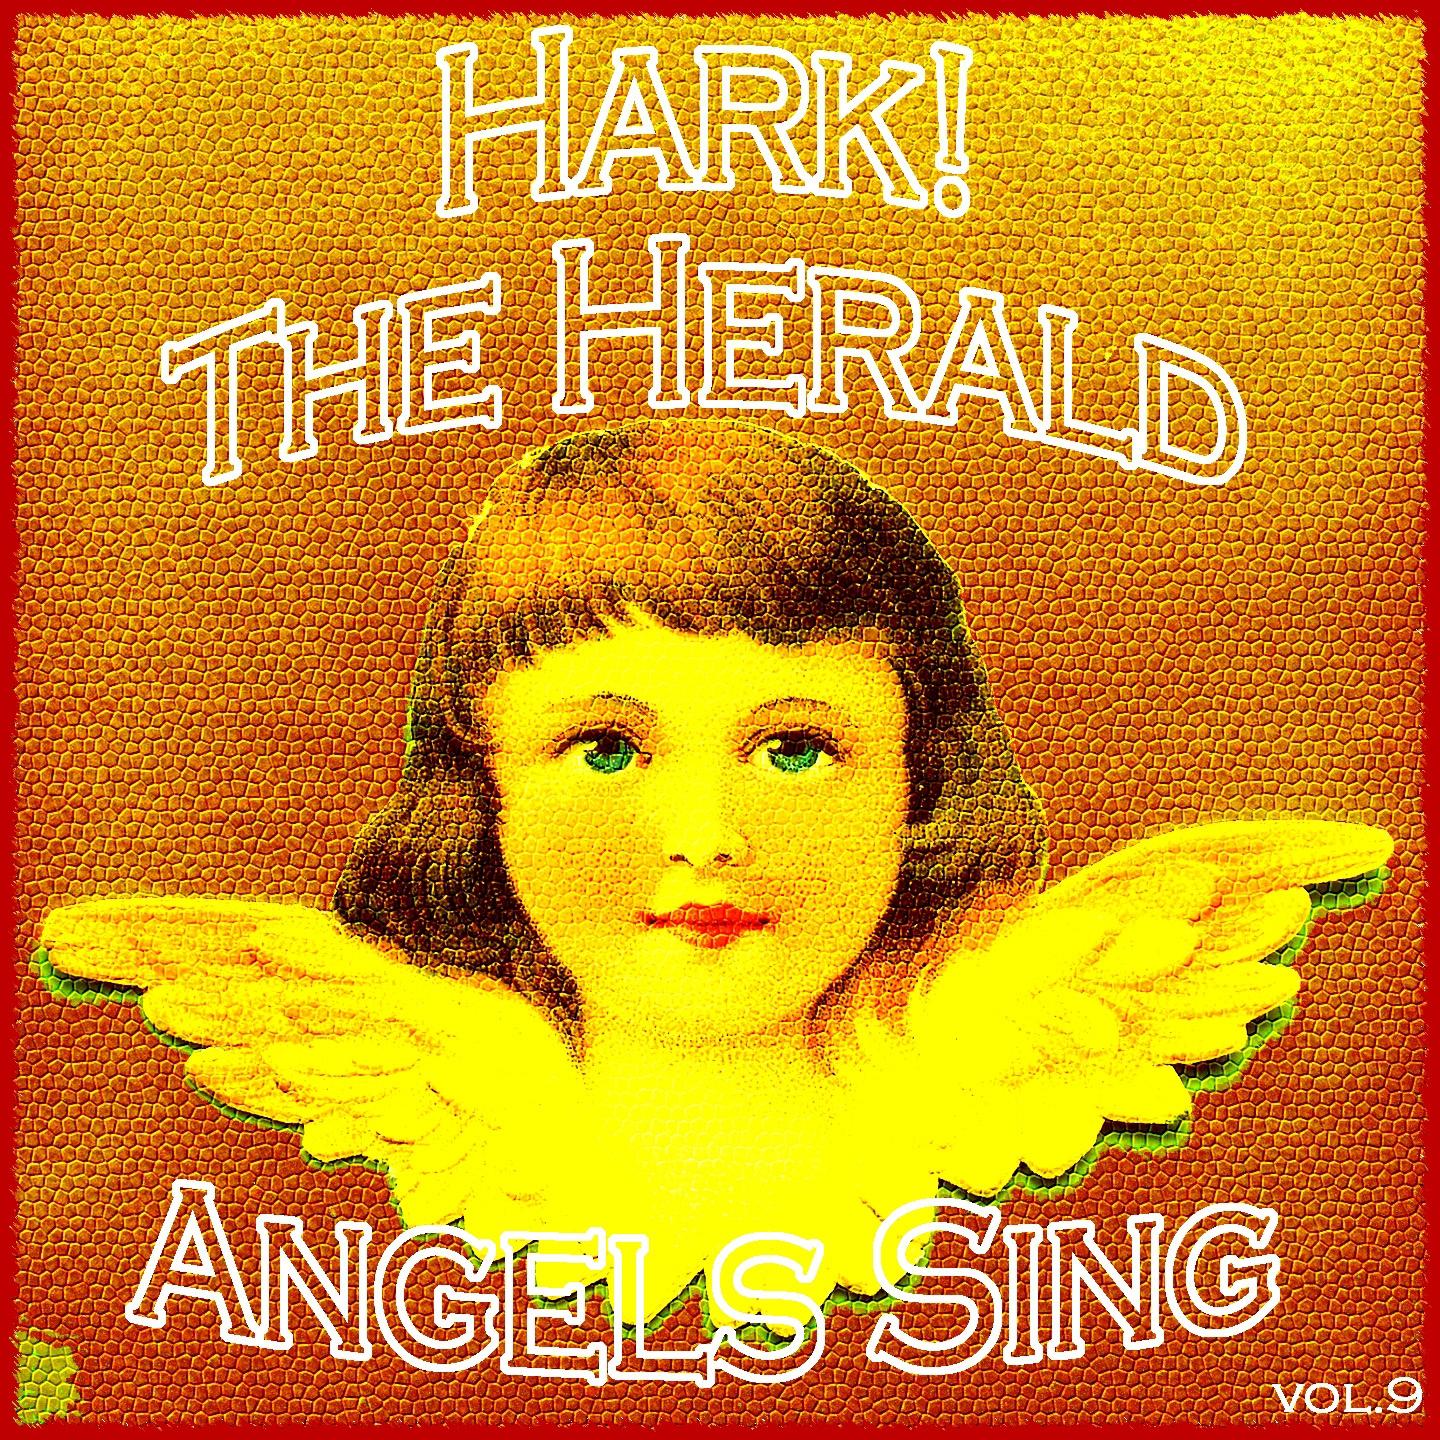 Hark! The Herald Angels Sing, Vol.9专辑